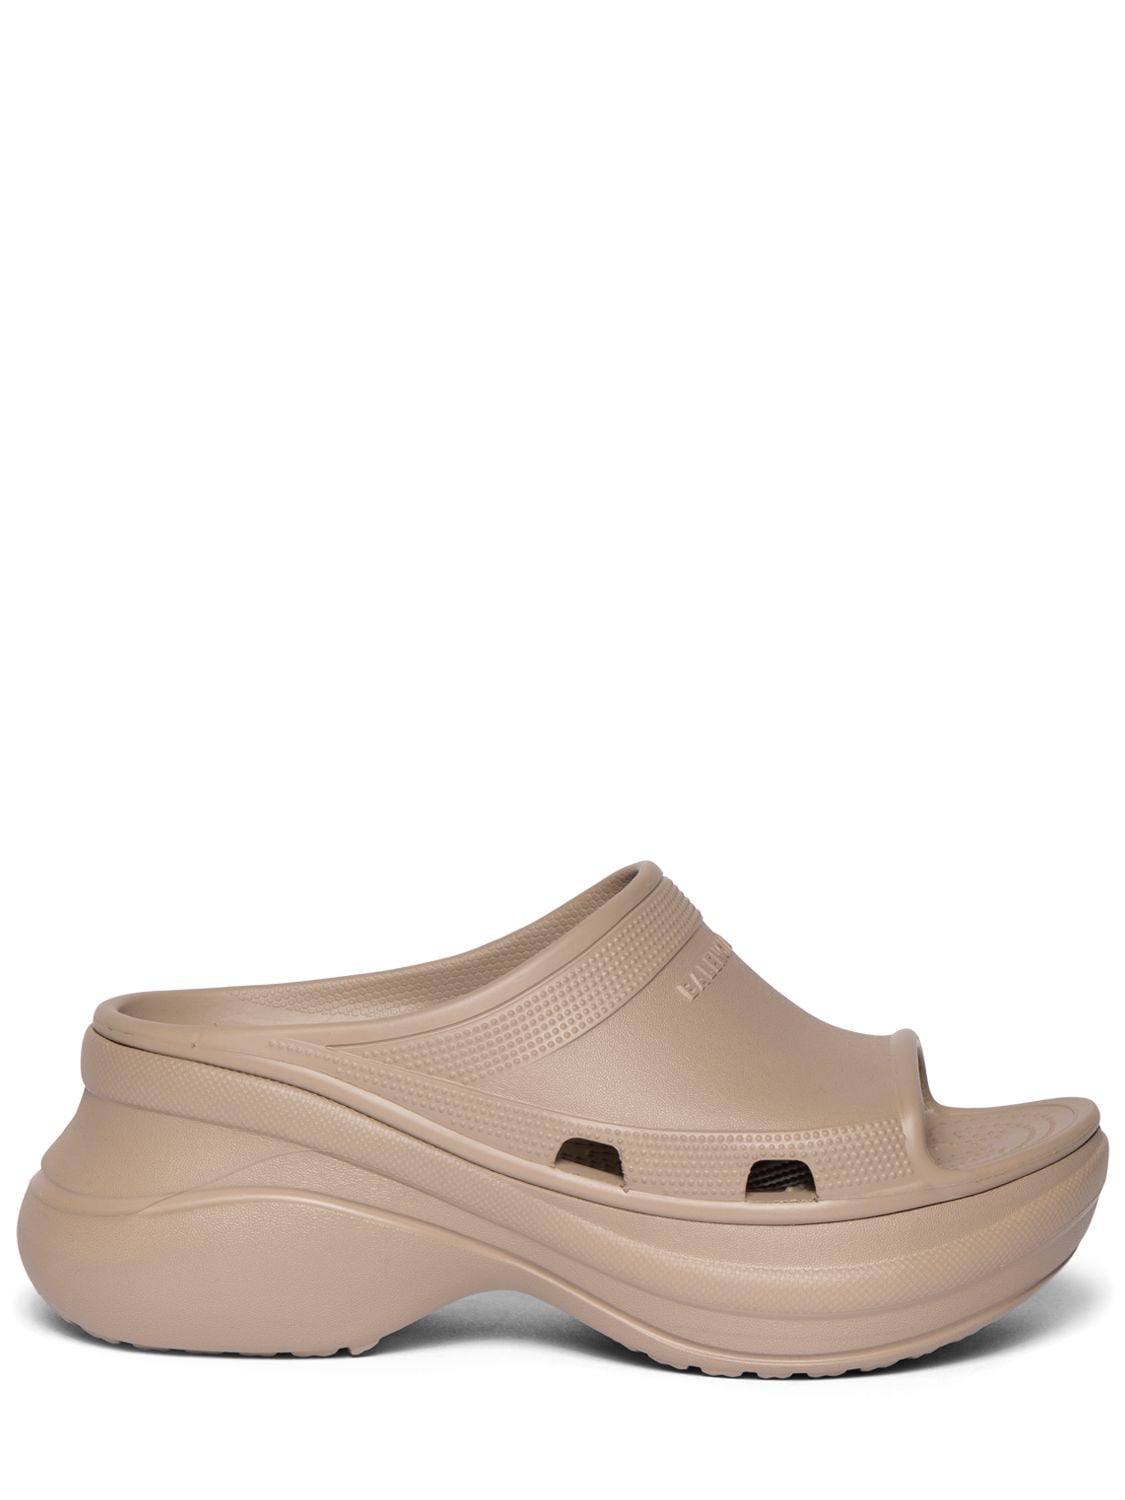 Image of Pool Crocs Sandals